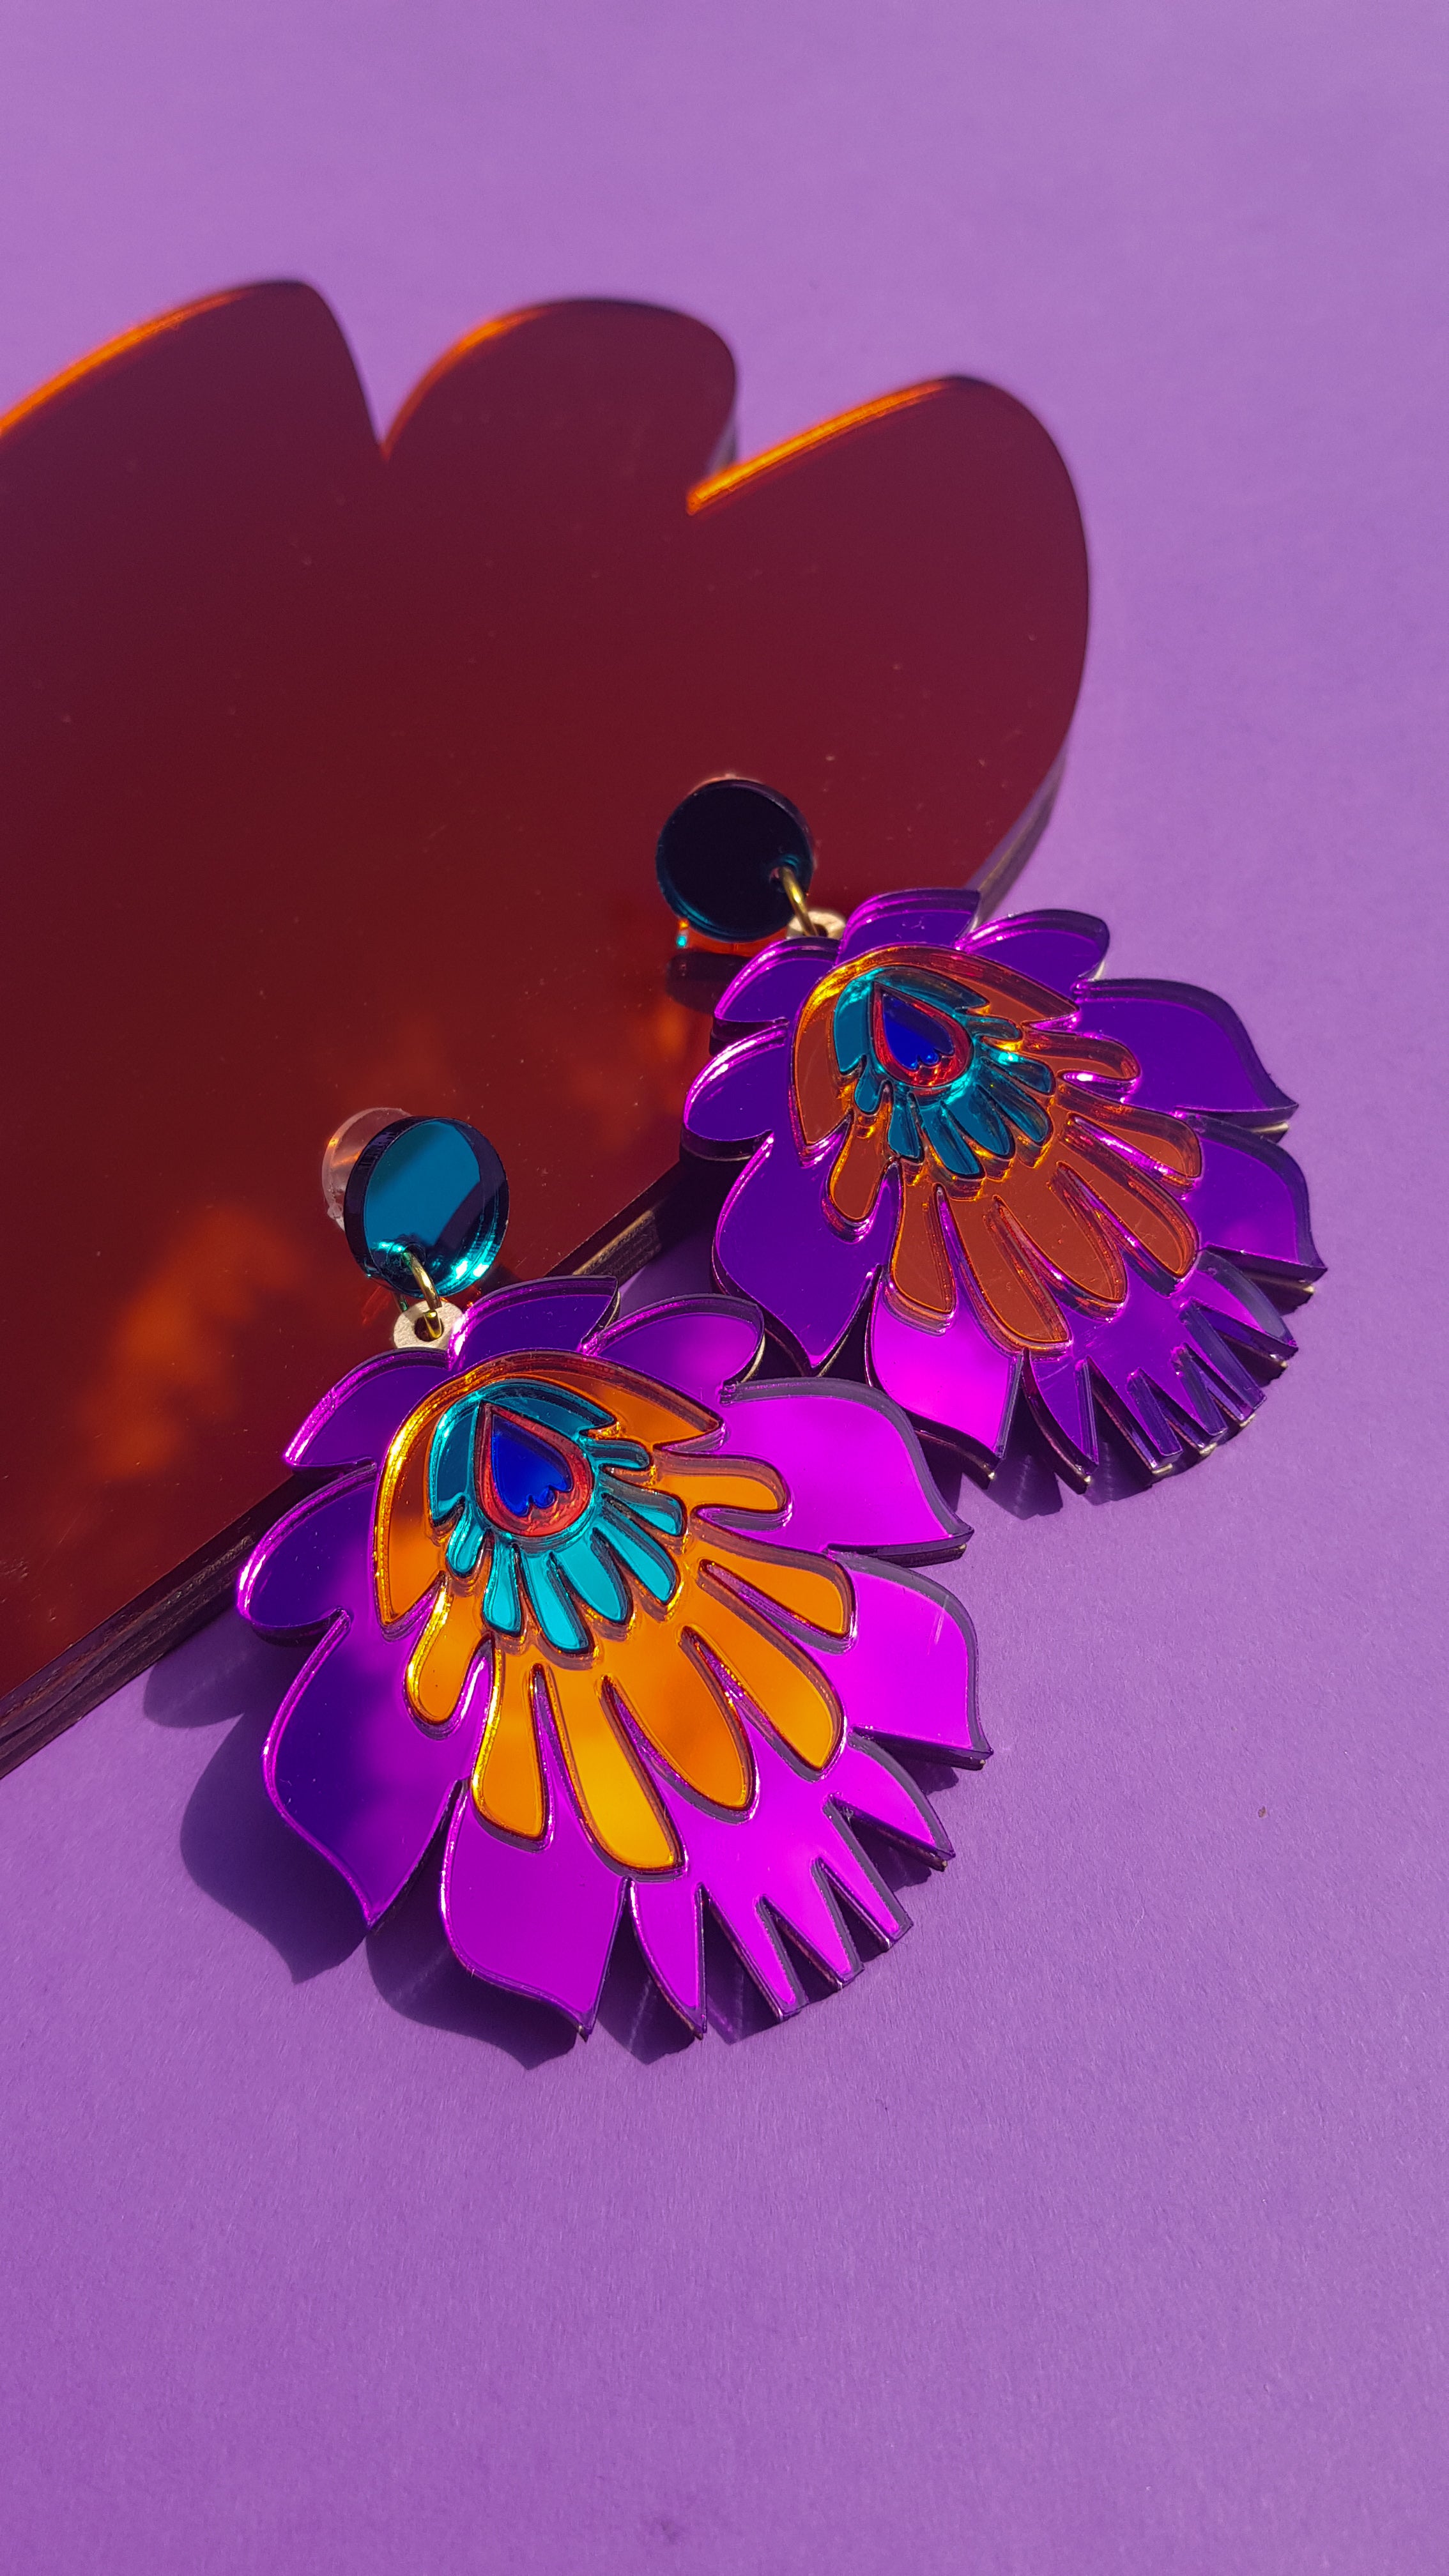 Folk Flower Statement Earrings, purple/orange